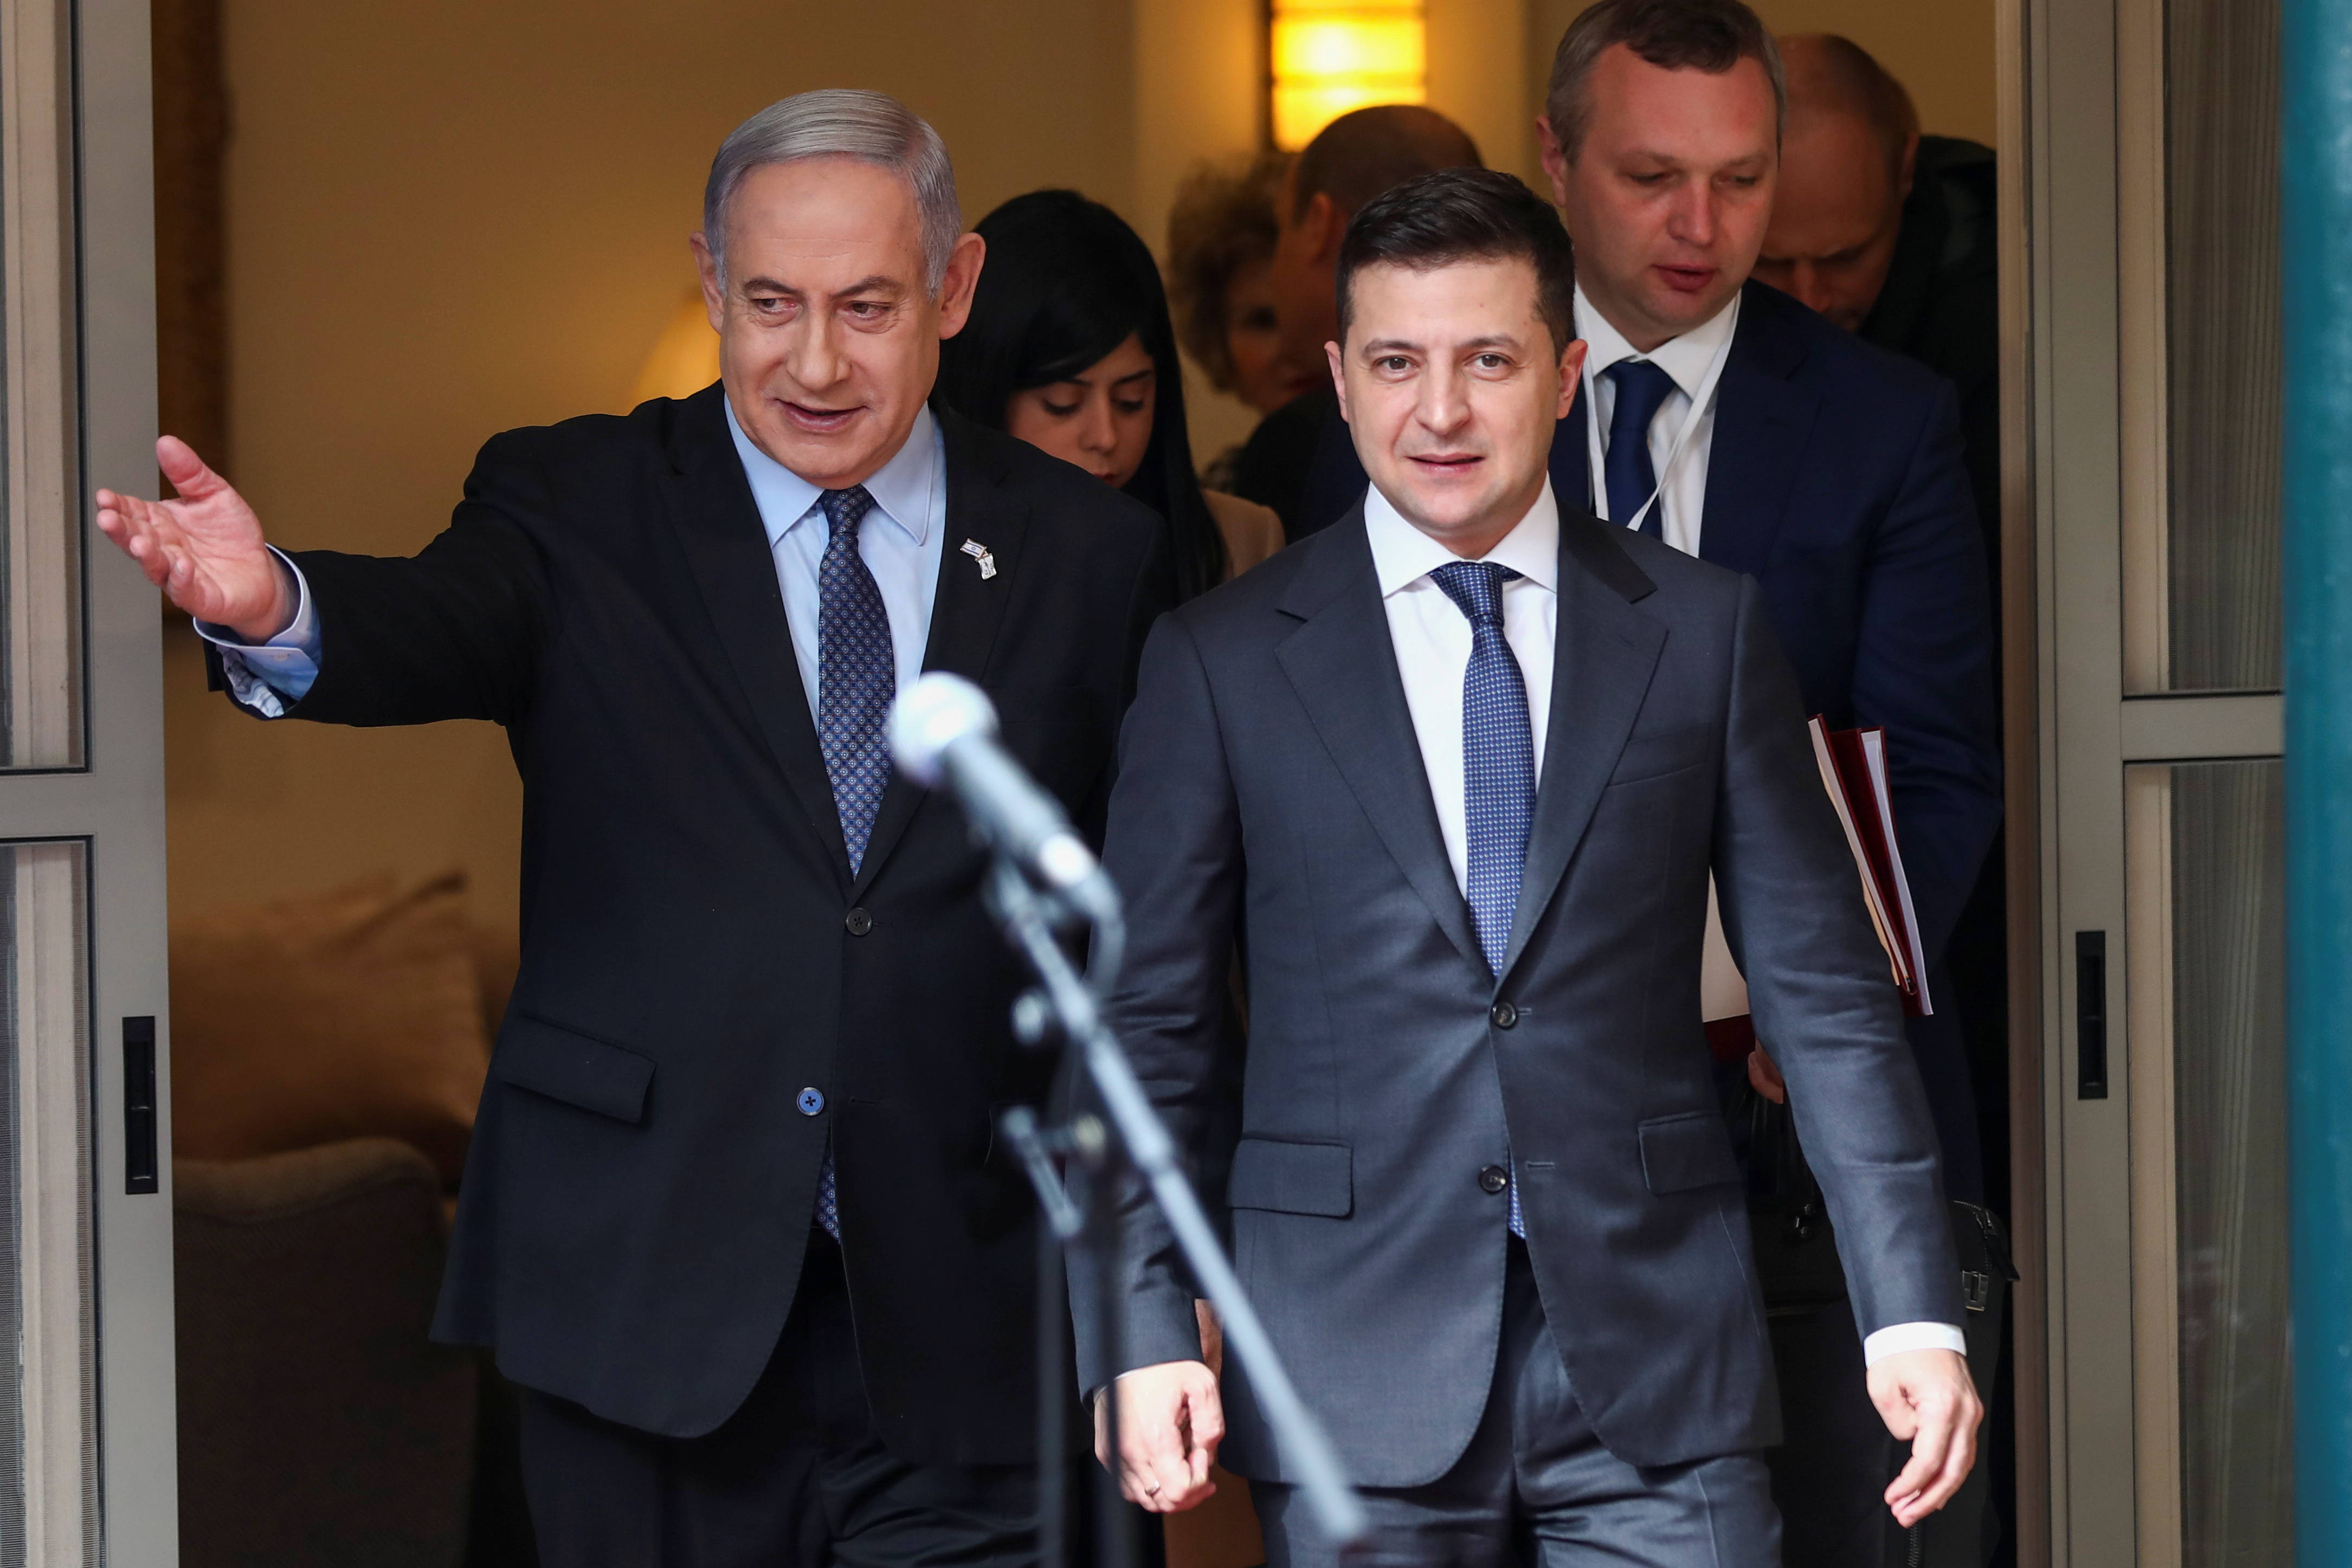 Netanyahu indicó que está “considerando” proveer asistencia a Ucrania y comentó que “Estados Unidos tomó una gran parte de las municiones israelíes y se las dio a Ucrania”. (REUTERS)